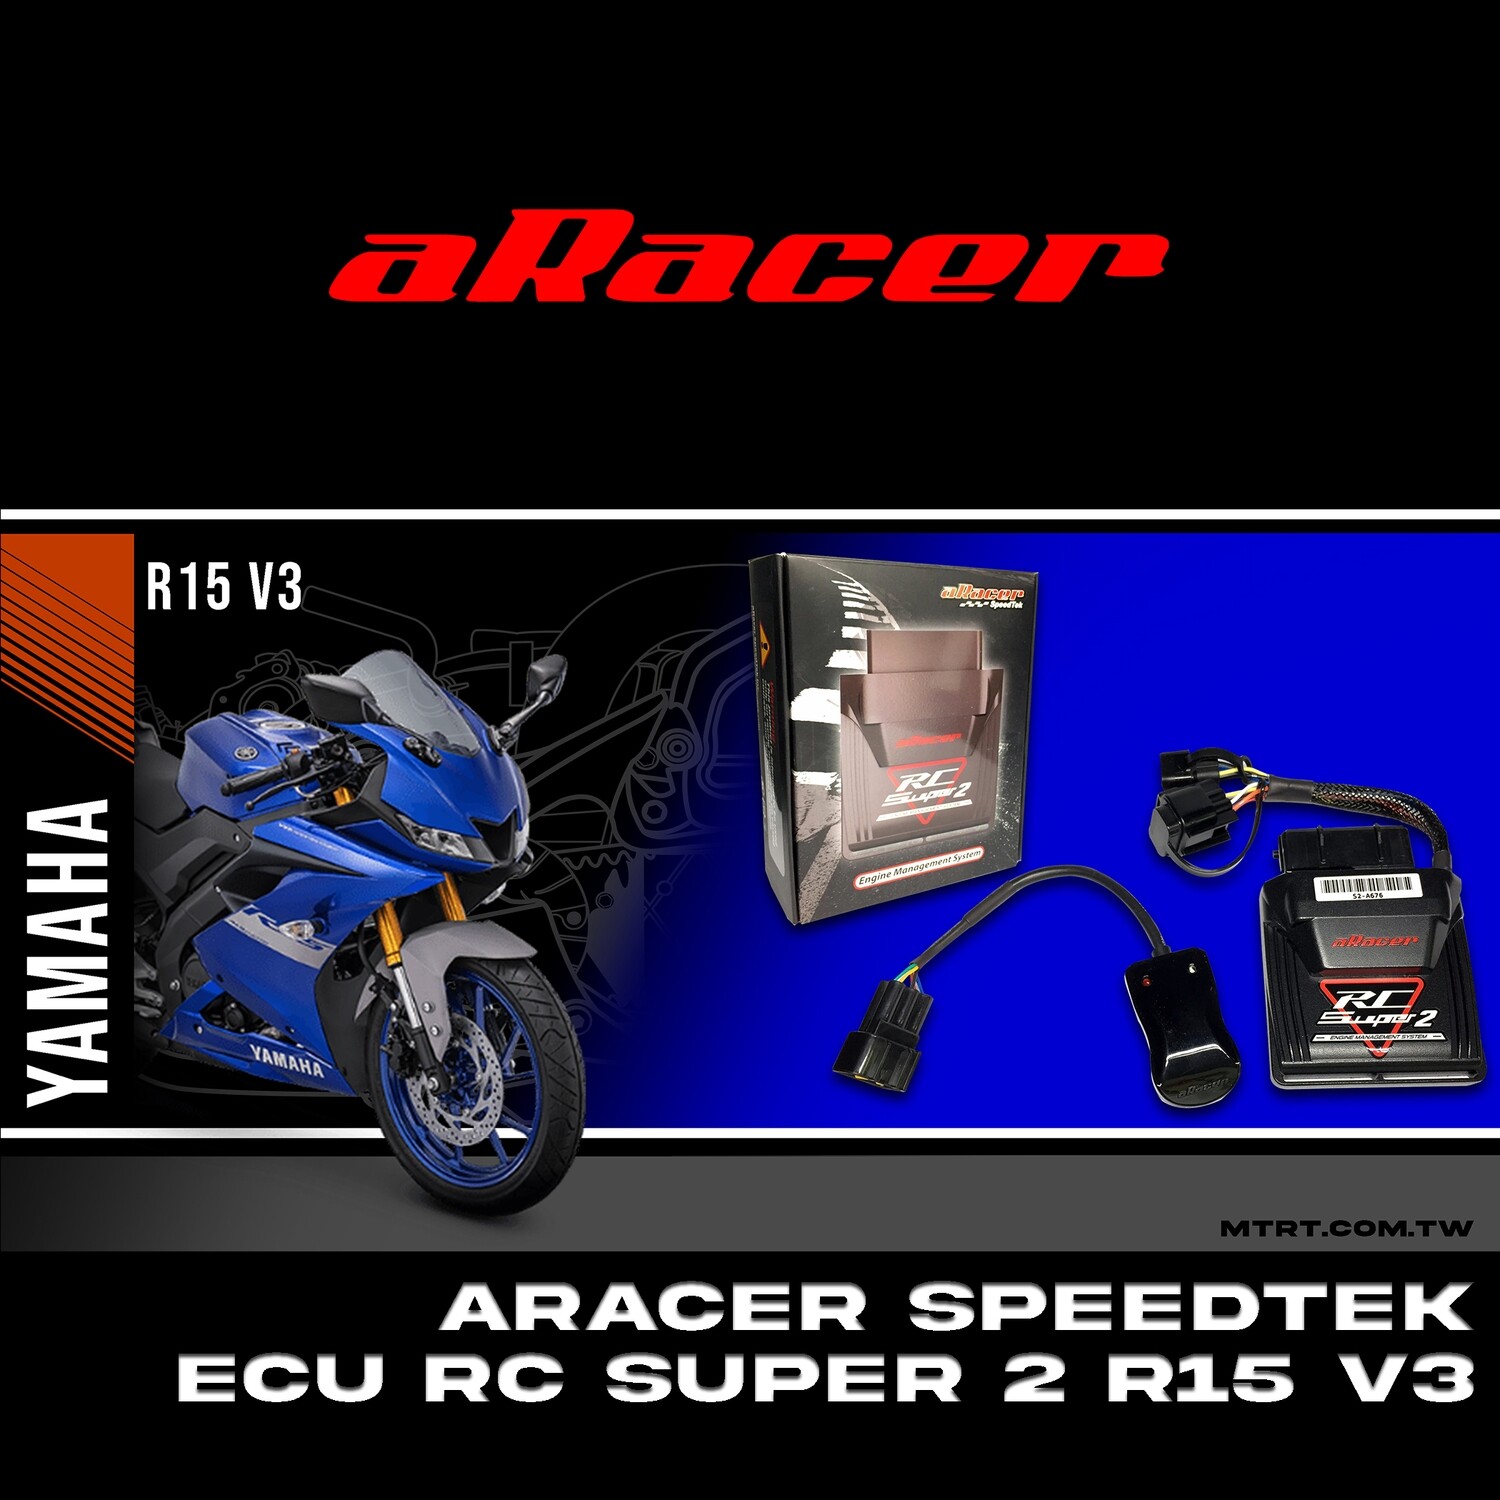 ARACER speedtek ECU RC SUPER2 R15 V3